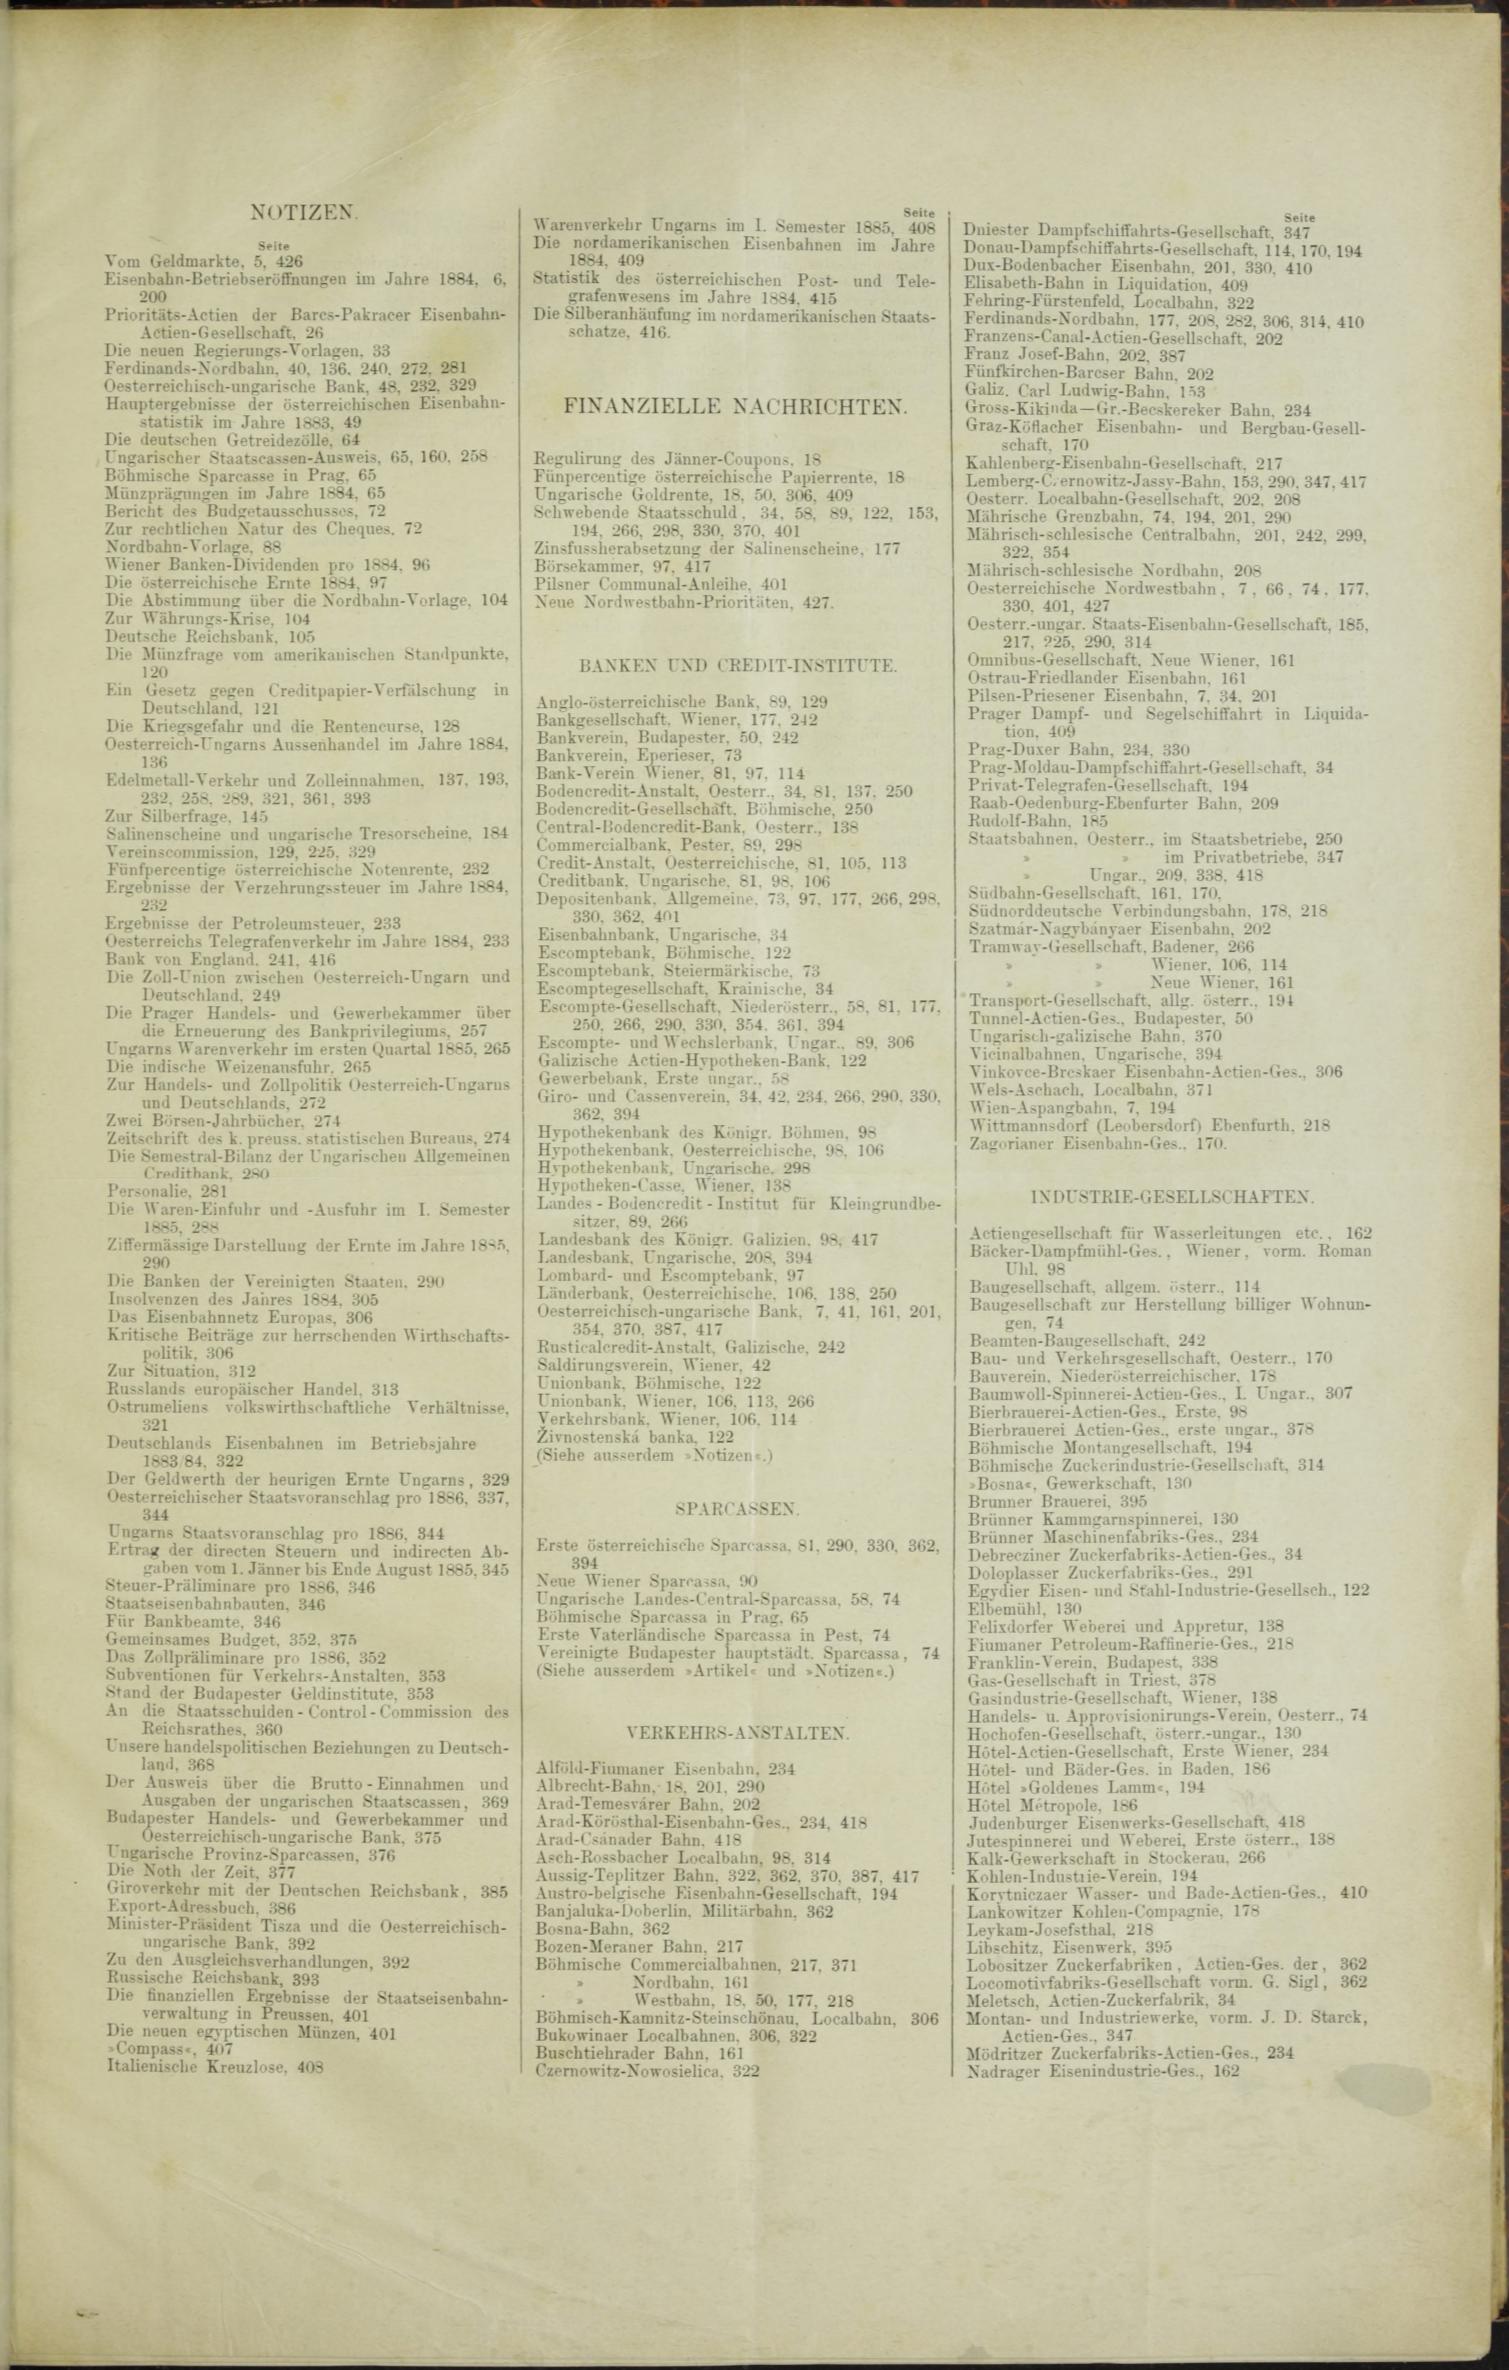 Der Tresor 26.03.1885 - Seite 11